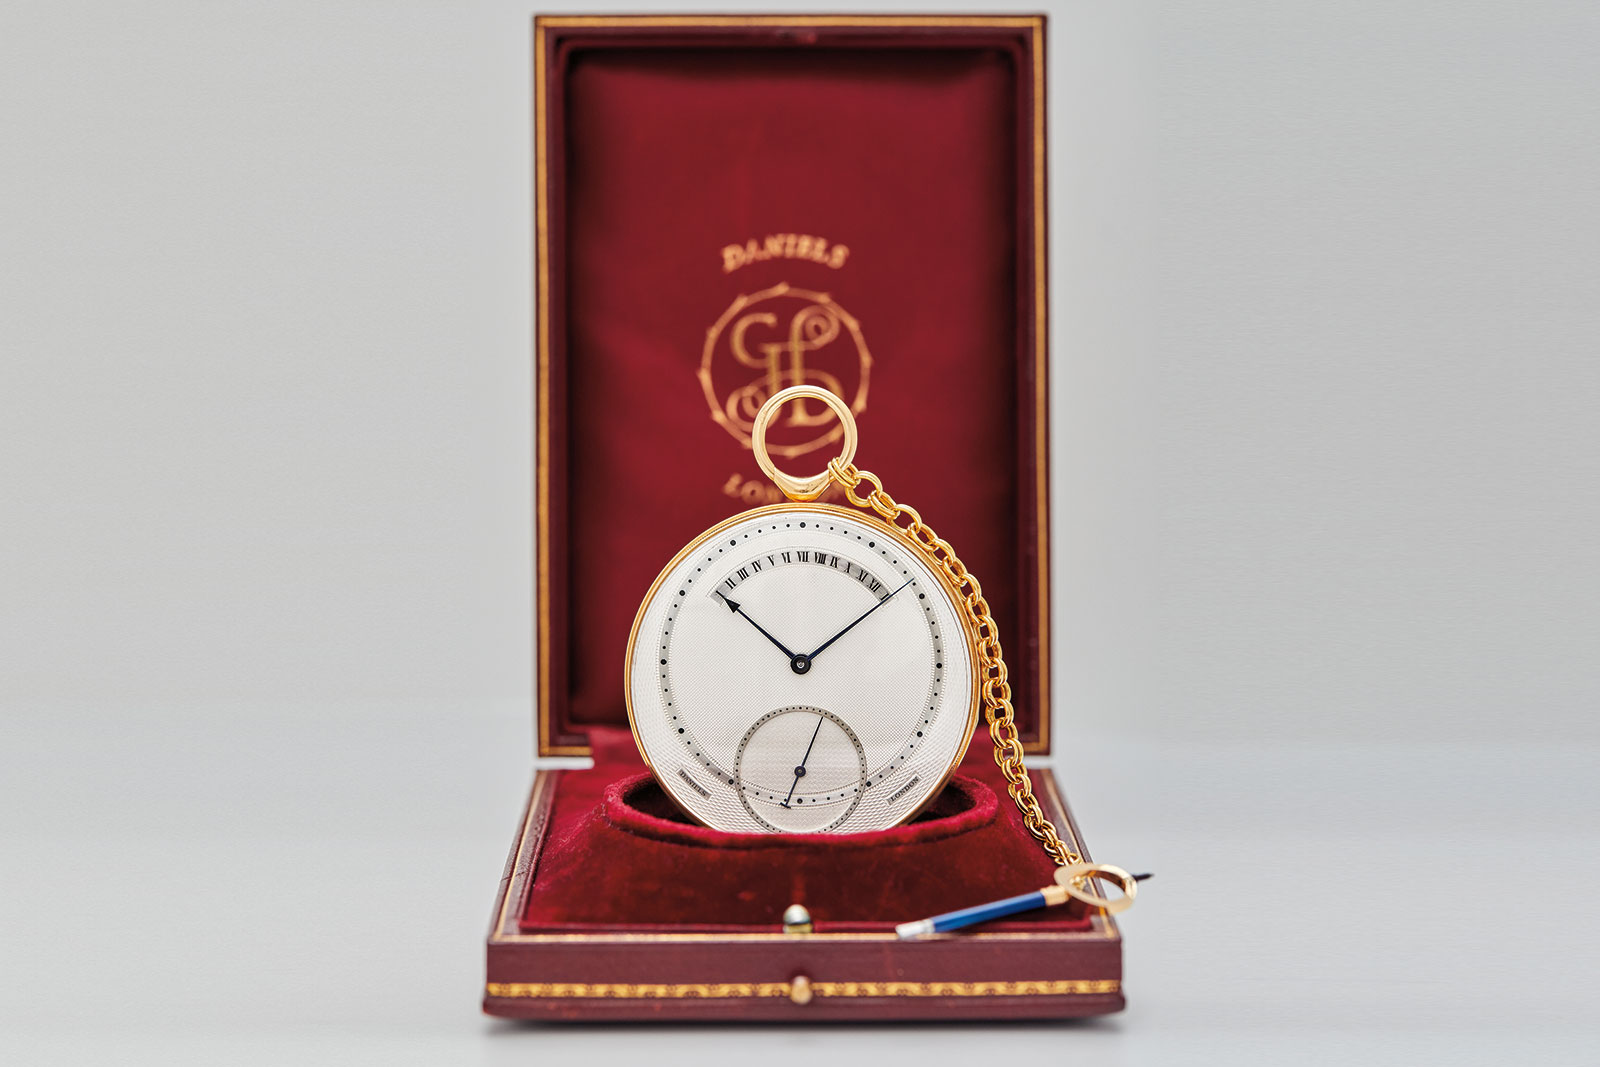 2 Điểm hấp dẫn tại phiên đấu giá cuối năm nhà Phillips: đồng hồ George Daniels và Ralph Ellison